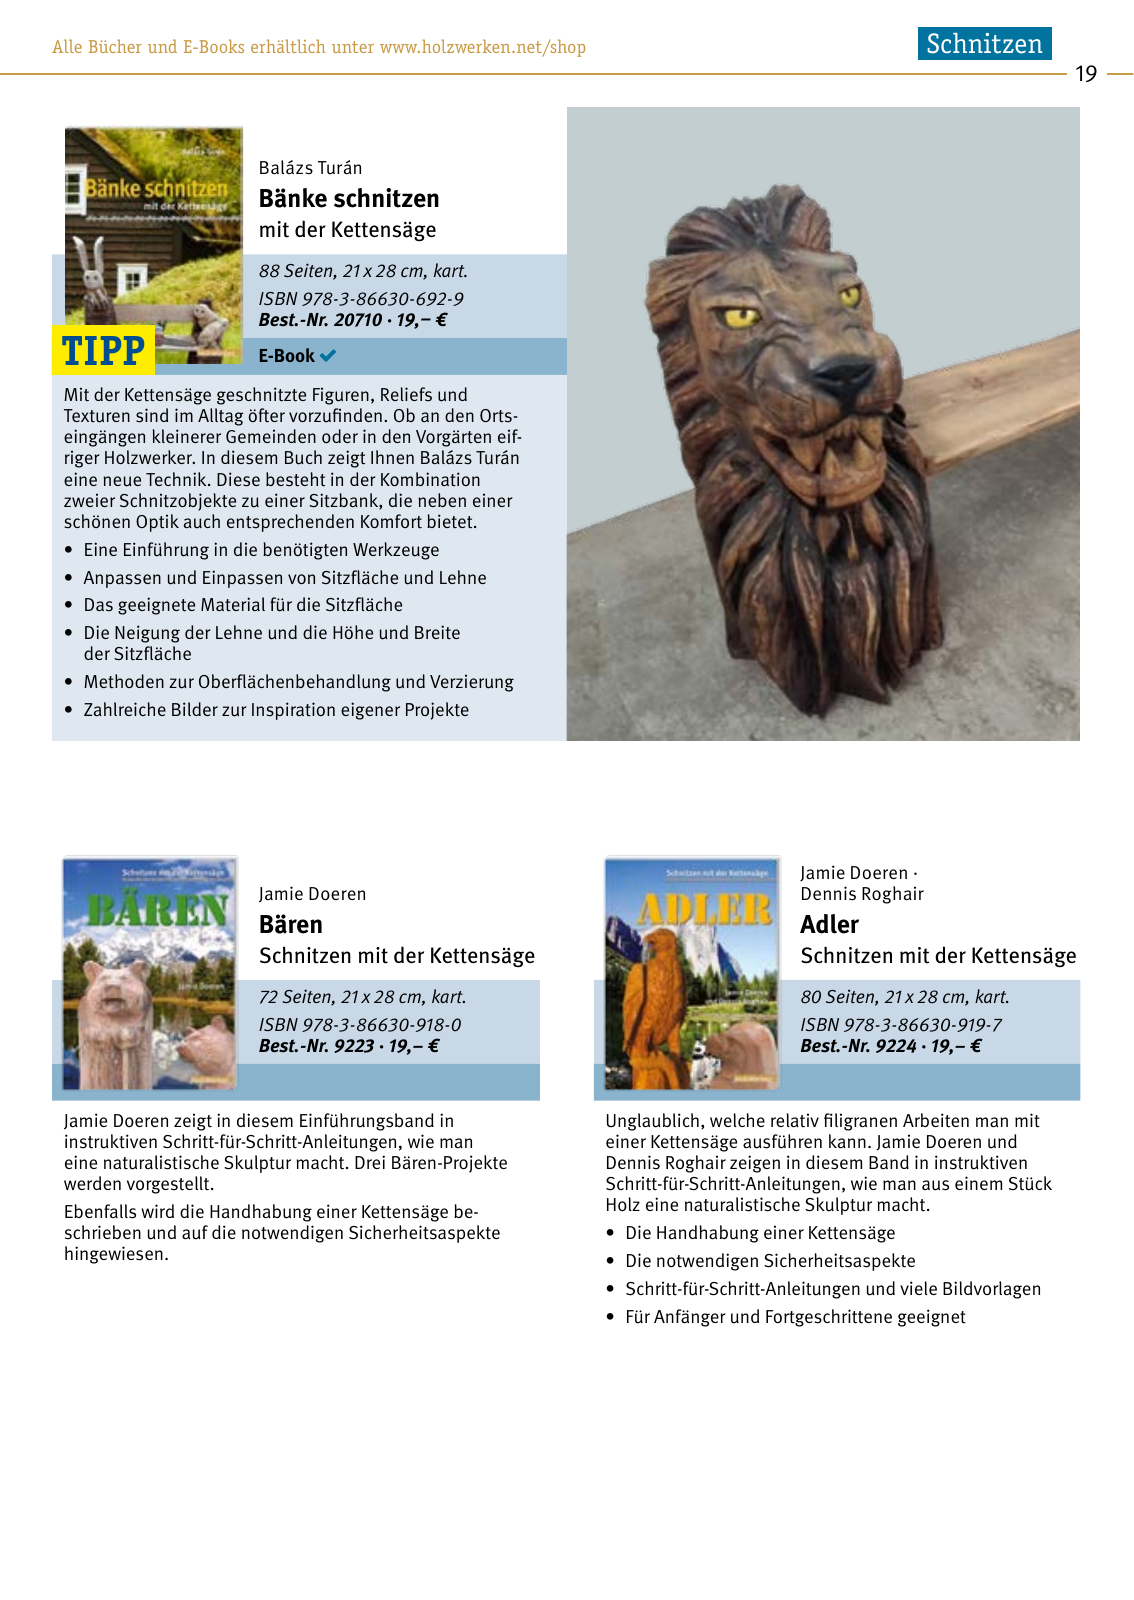 Vorschau HolzWerken Katalog 2021 Seite 19